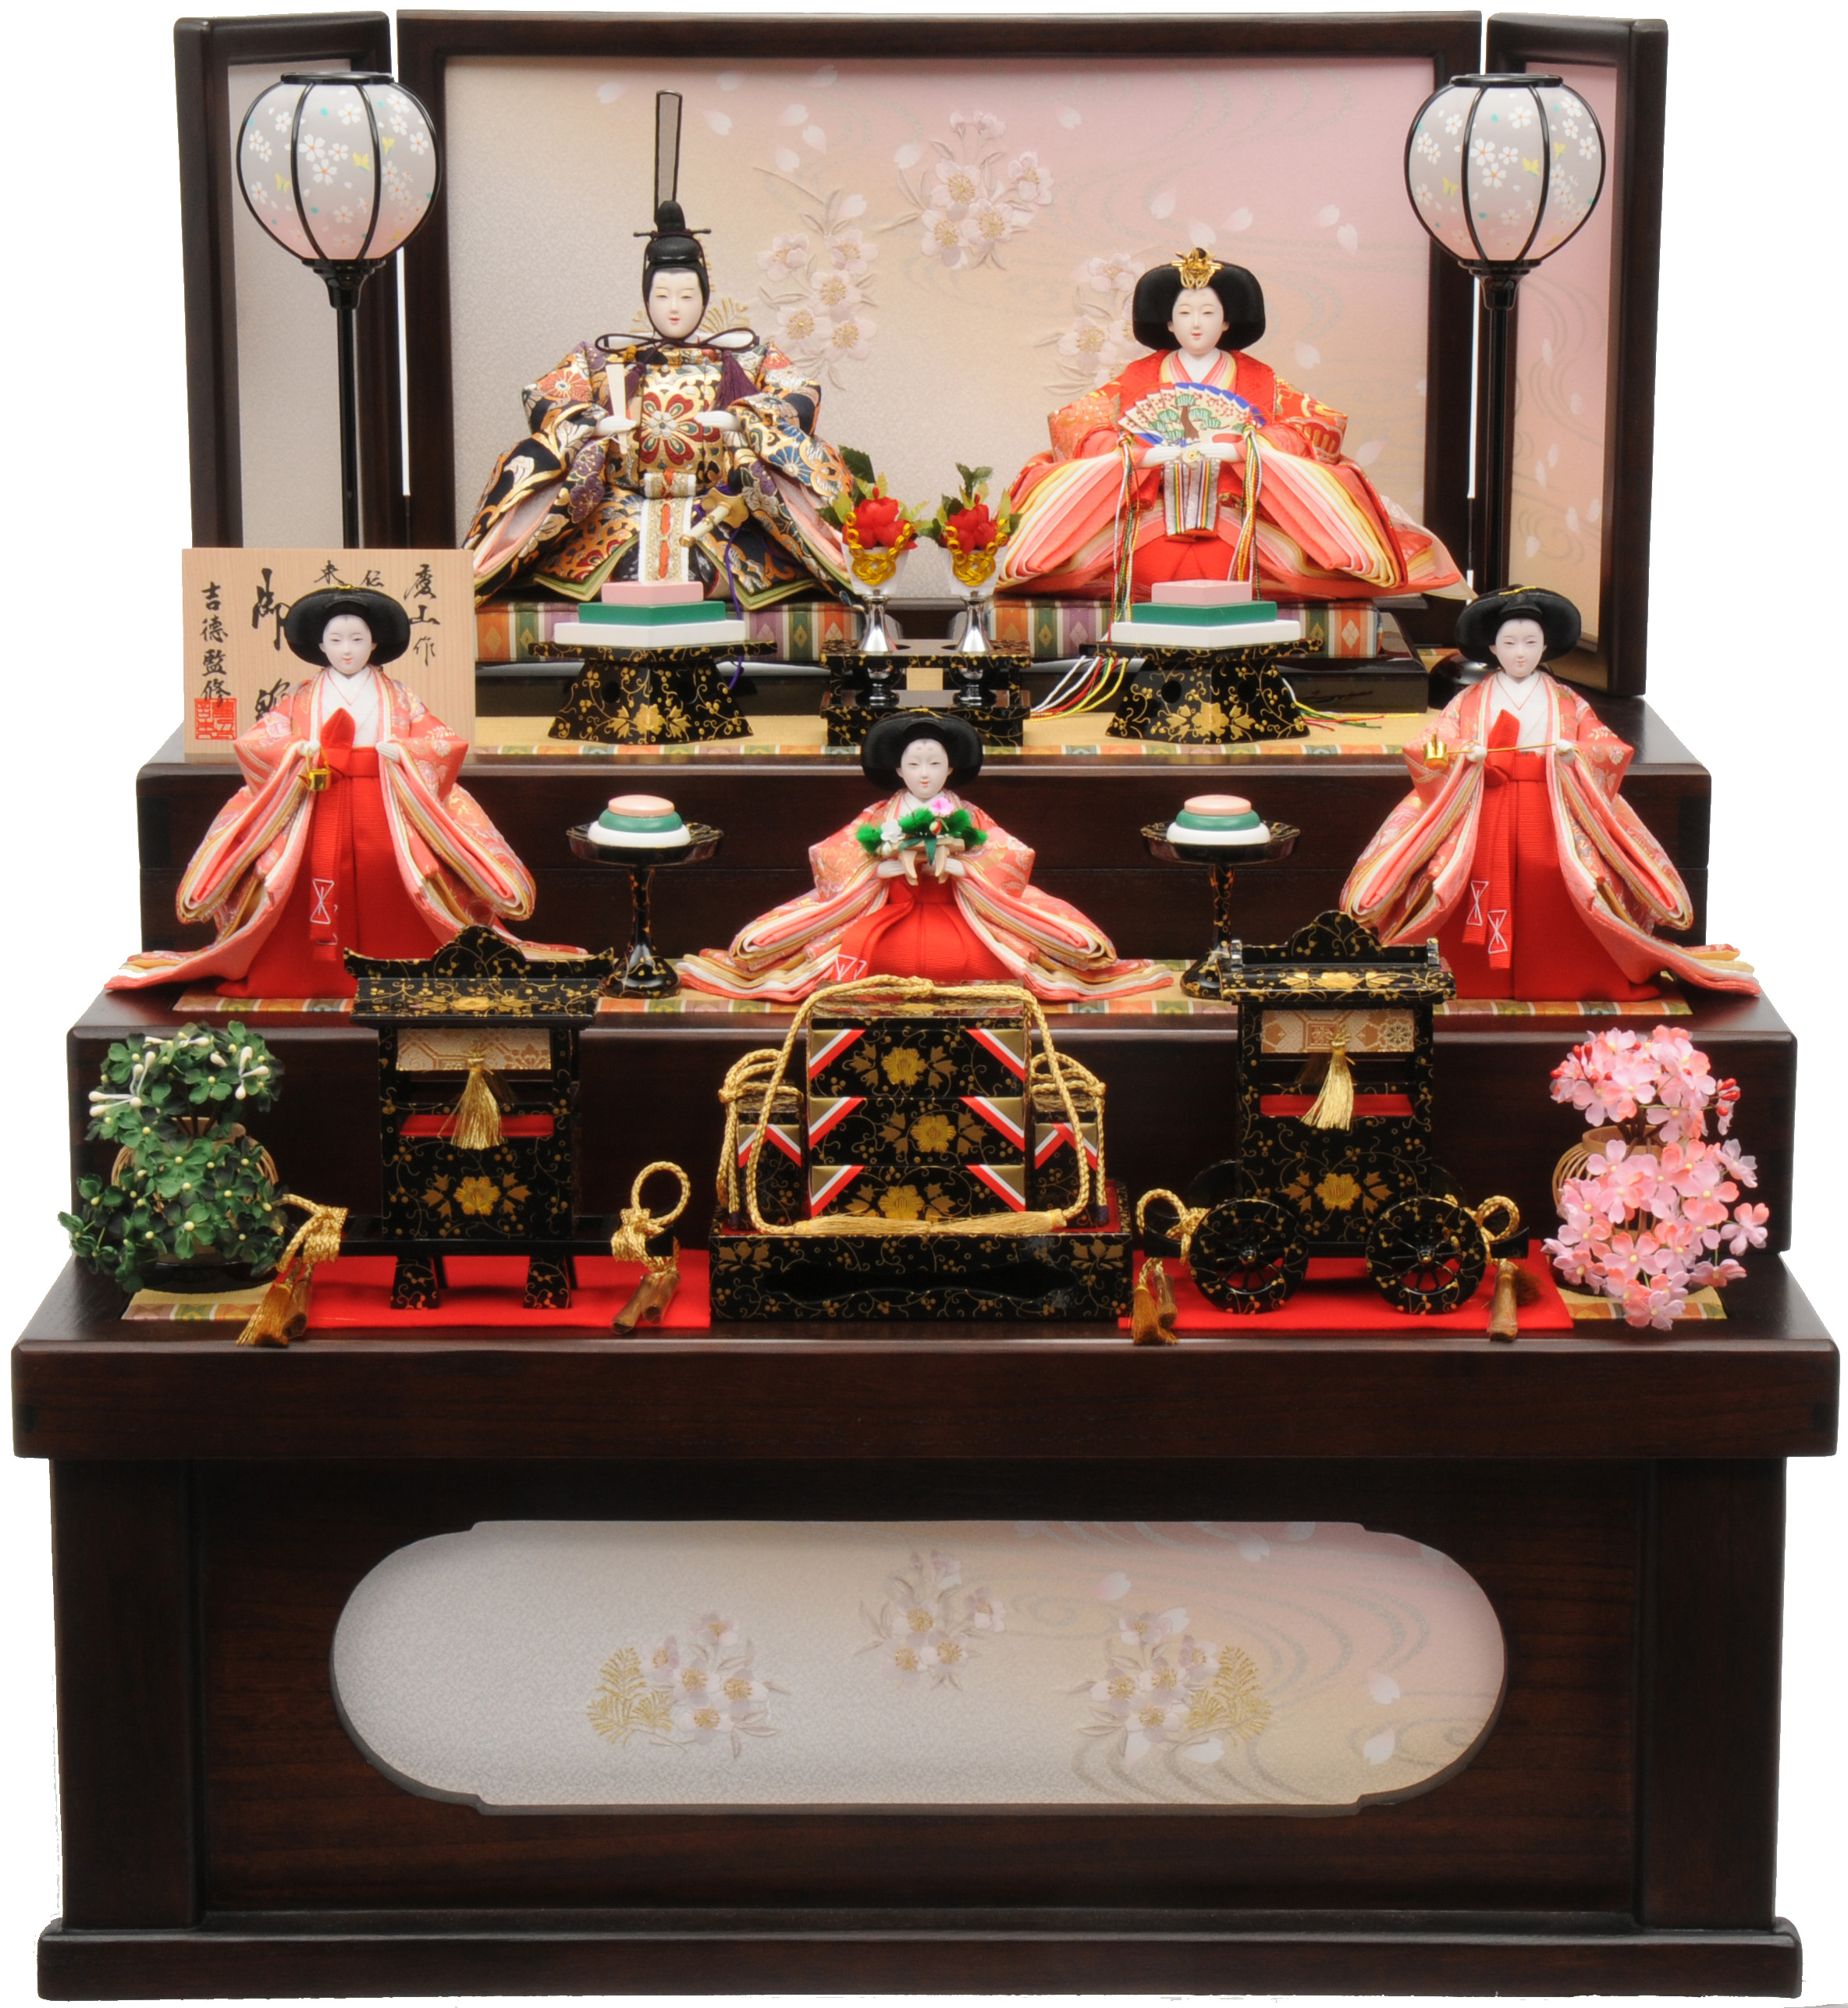 日本トイザらス、ひな祭りに向けて2014年度のひな人形の販売を開始